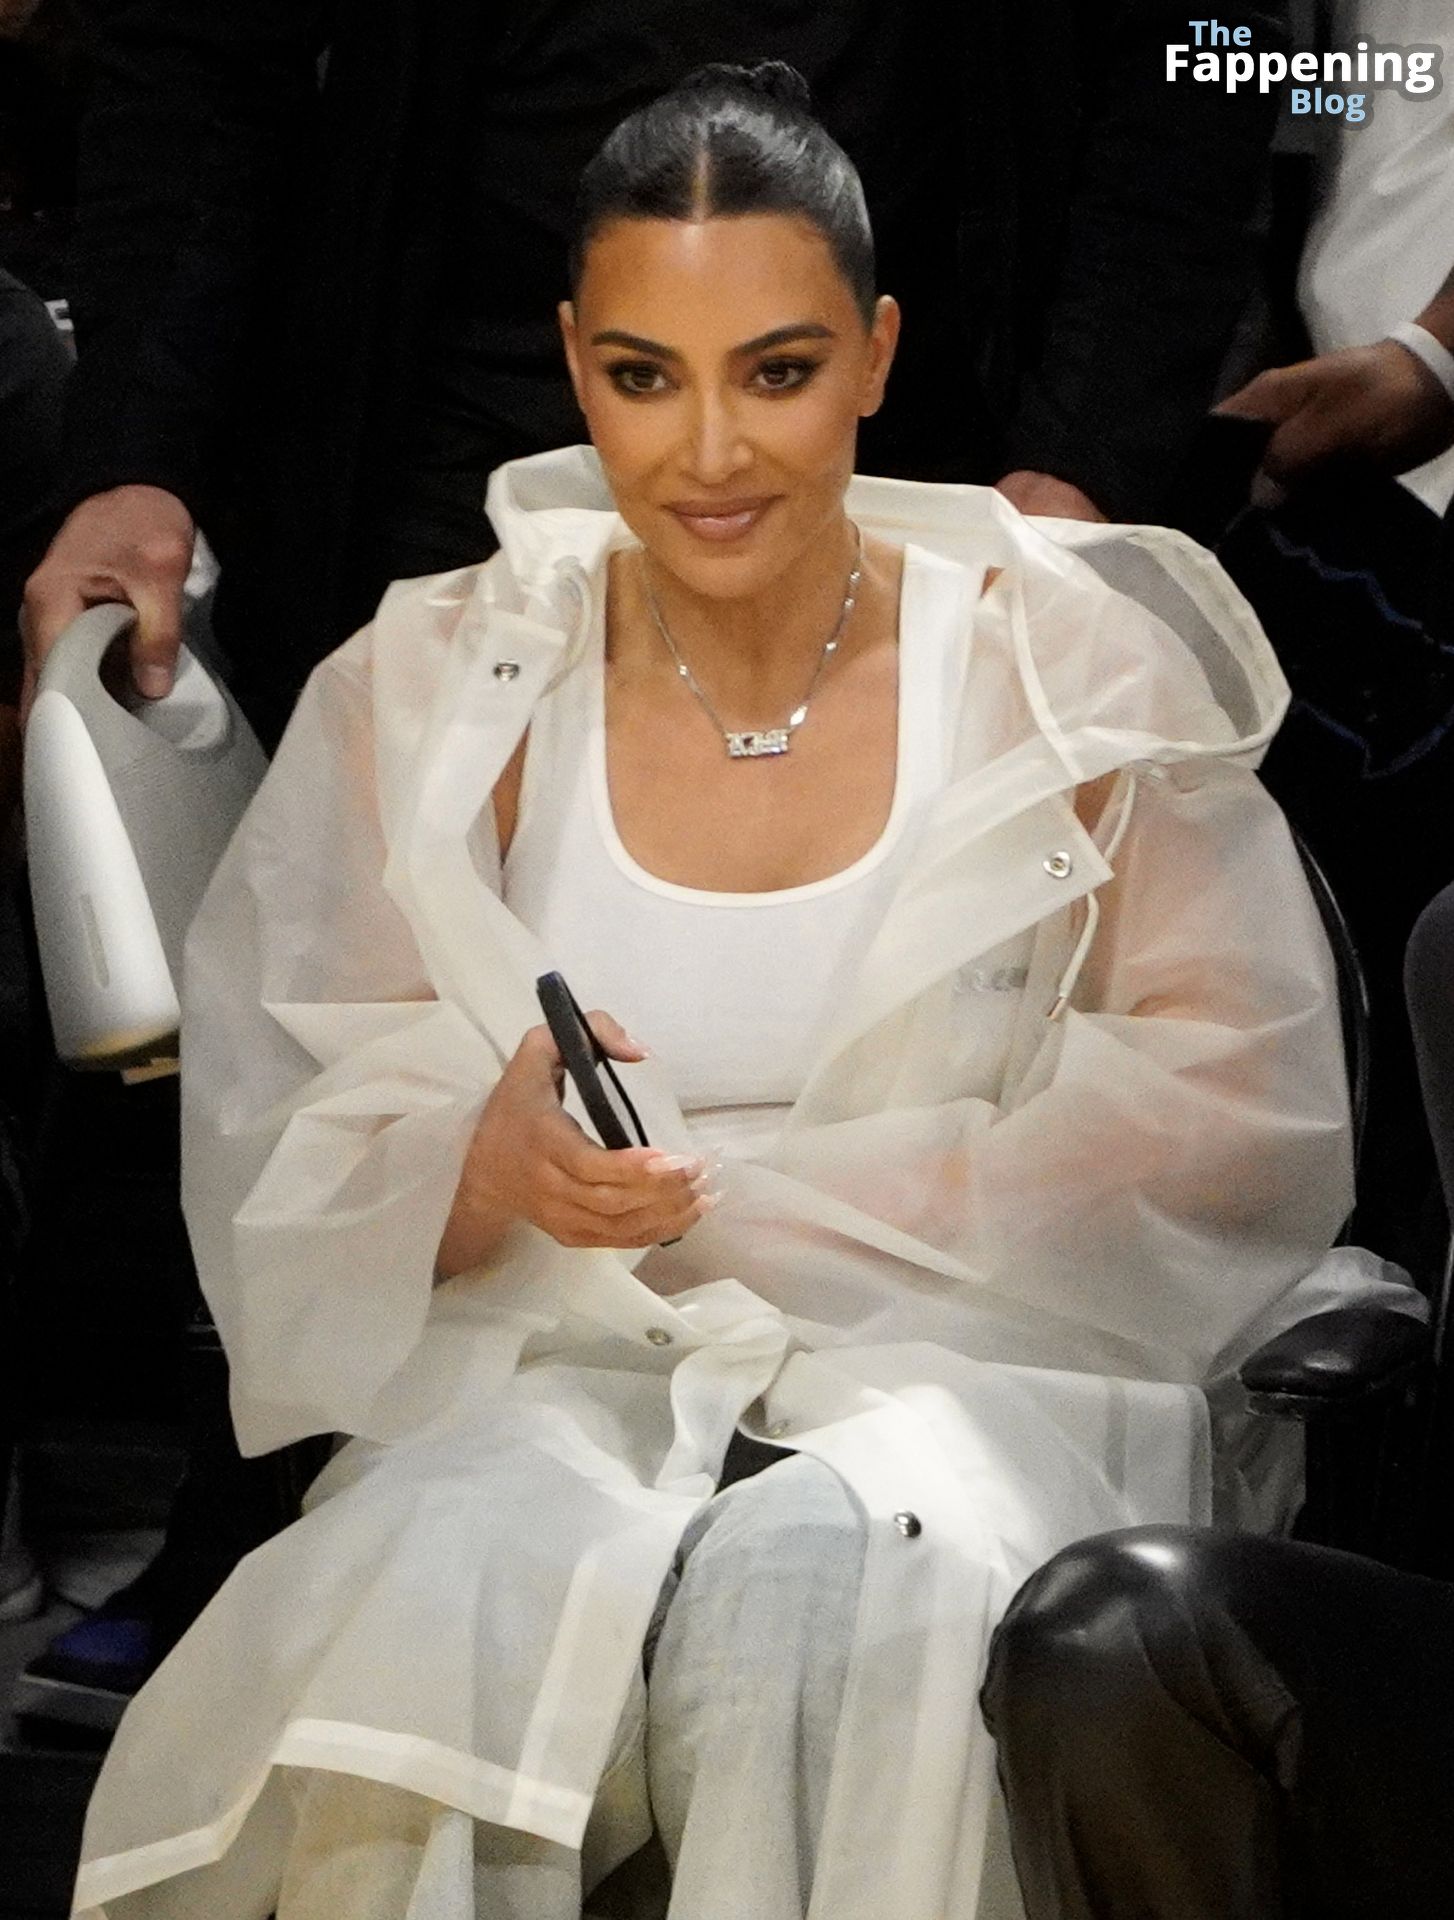 Kim-Kardashian-Sexy-The-Fappening-Blog-5-1.jpg